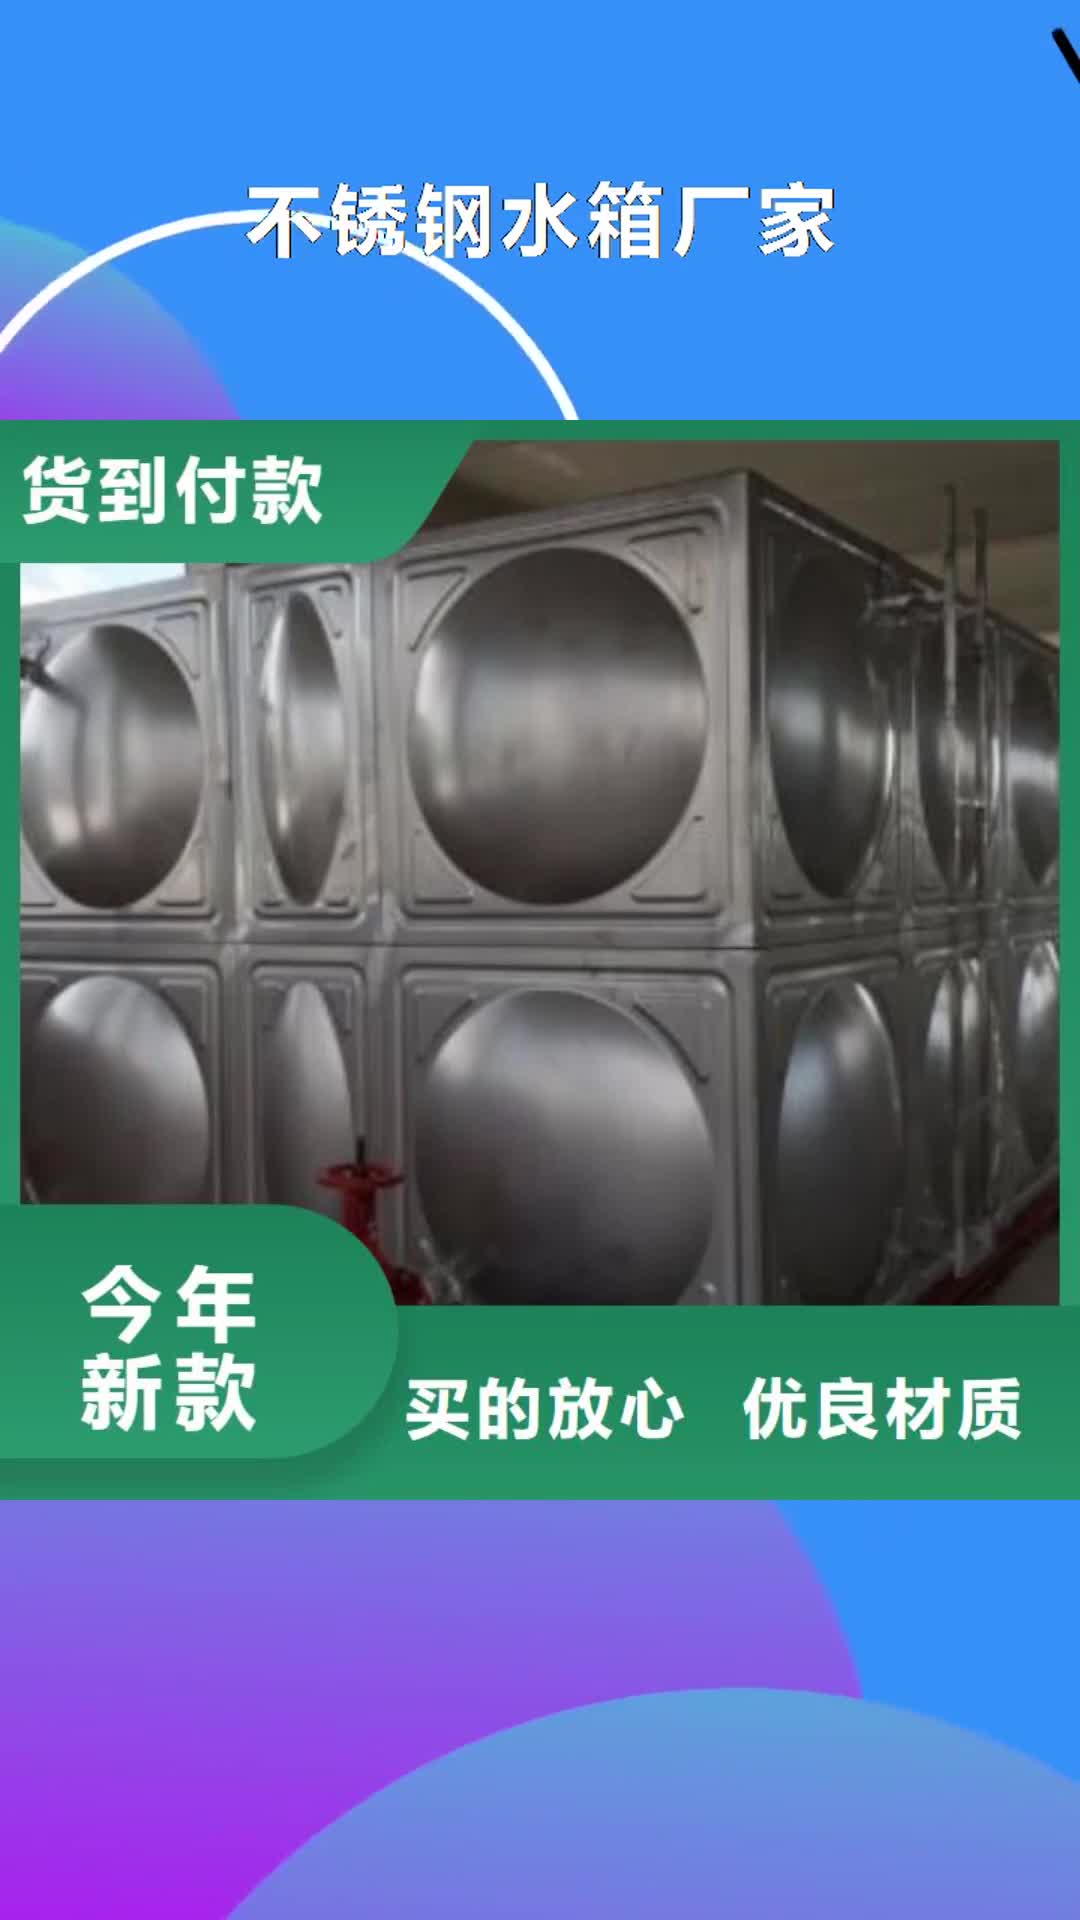 重庆【不锈钢水箱厂家】 恒压变频供水设备一致好评产品